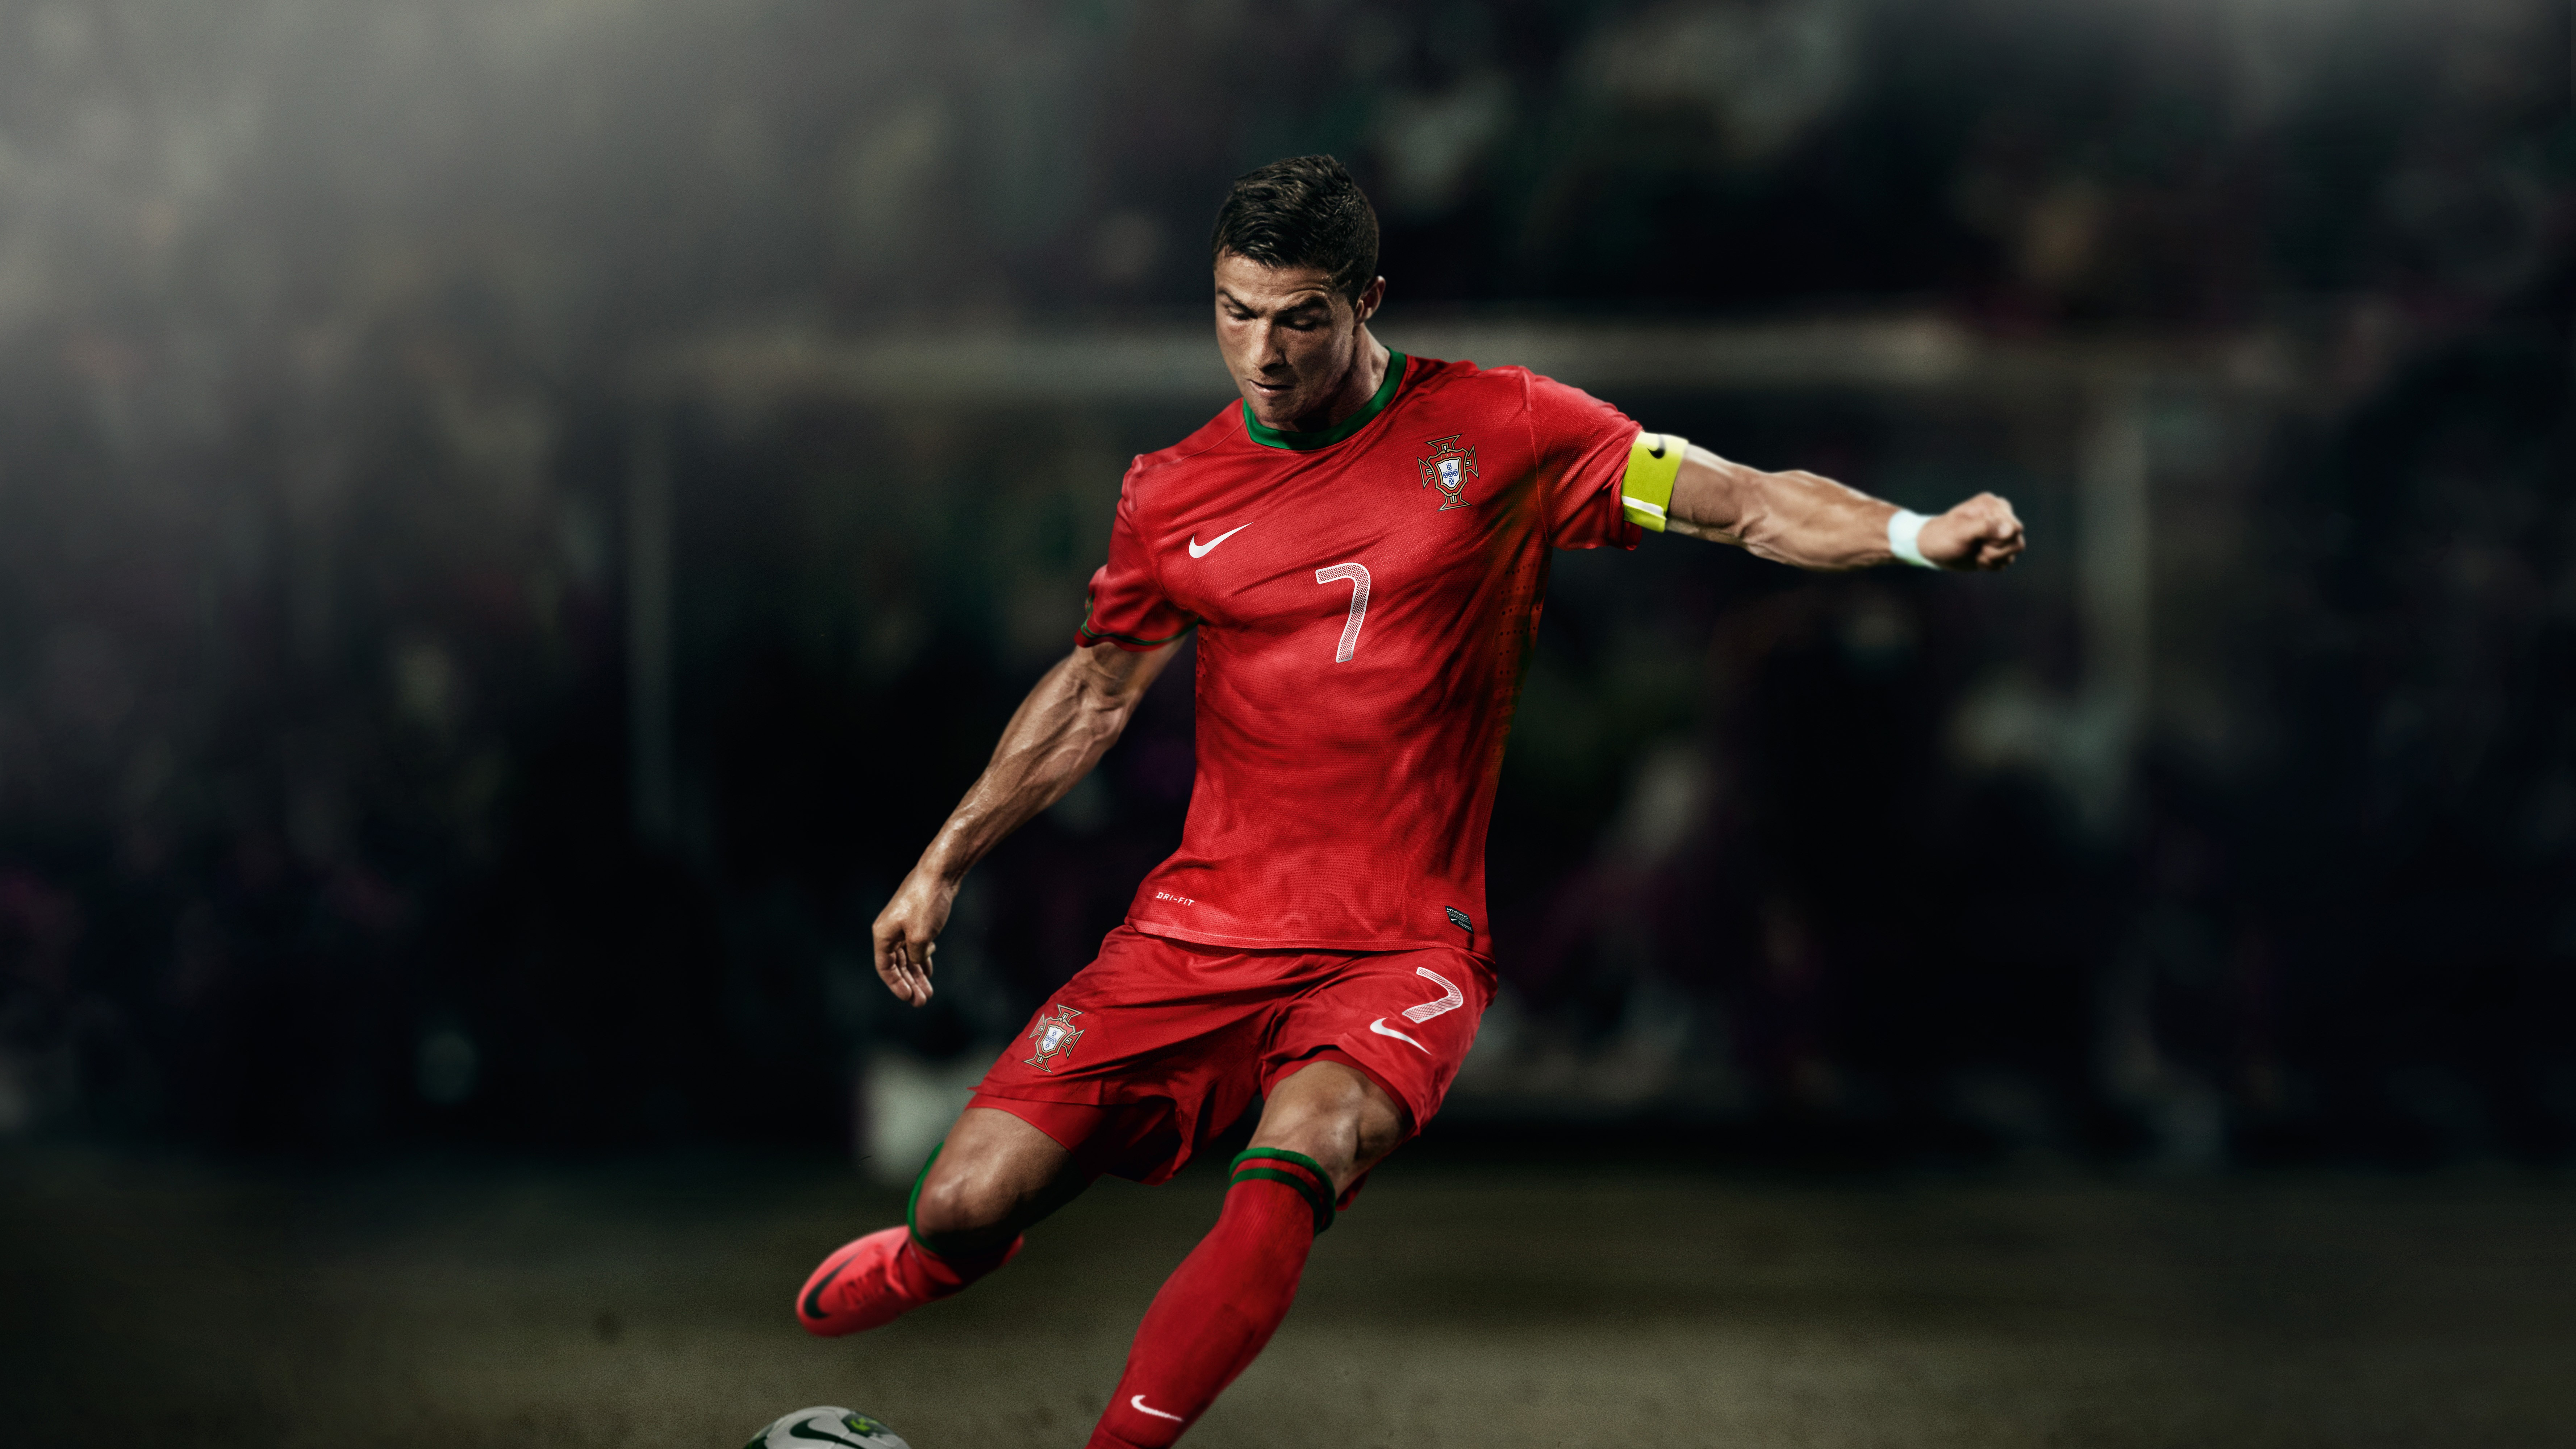 fondo de pantalla de fútbol,jugador de fútbol,jugador de fútbol,jugador,rojo,fútbol americano